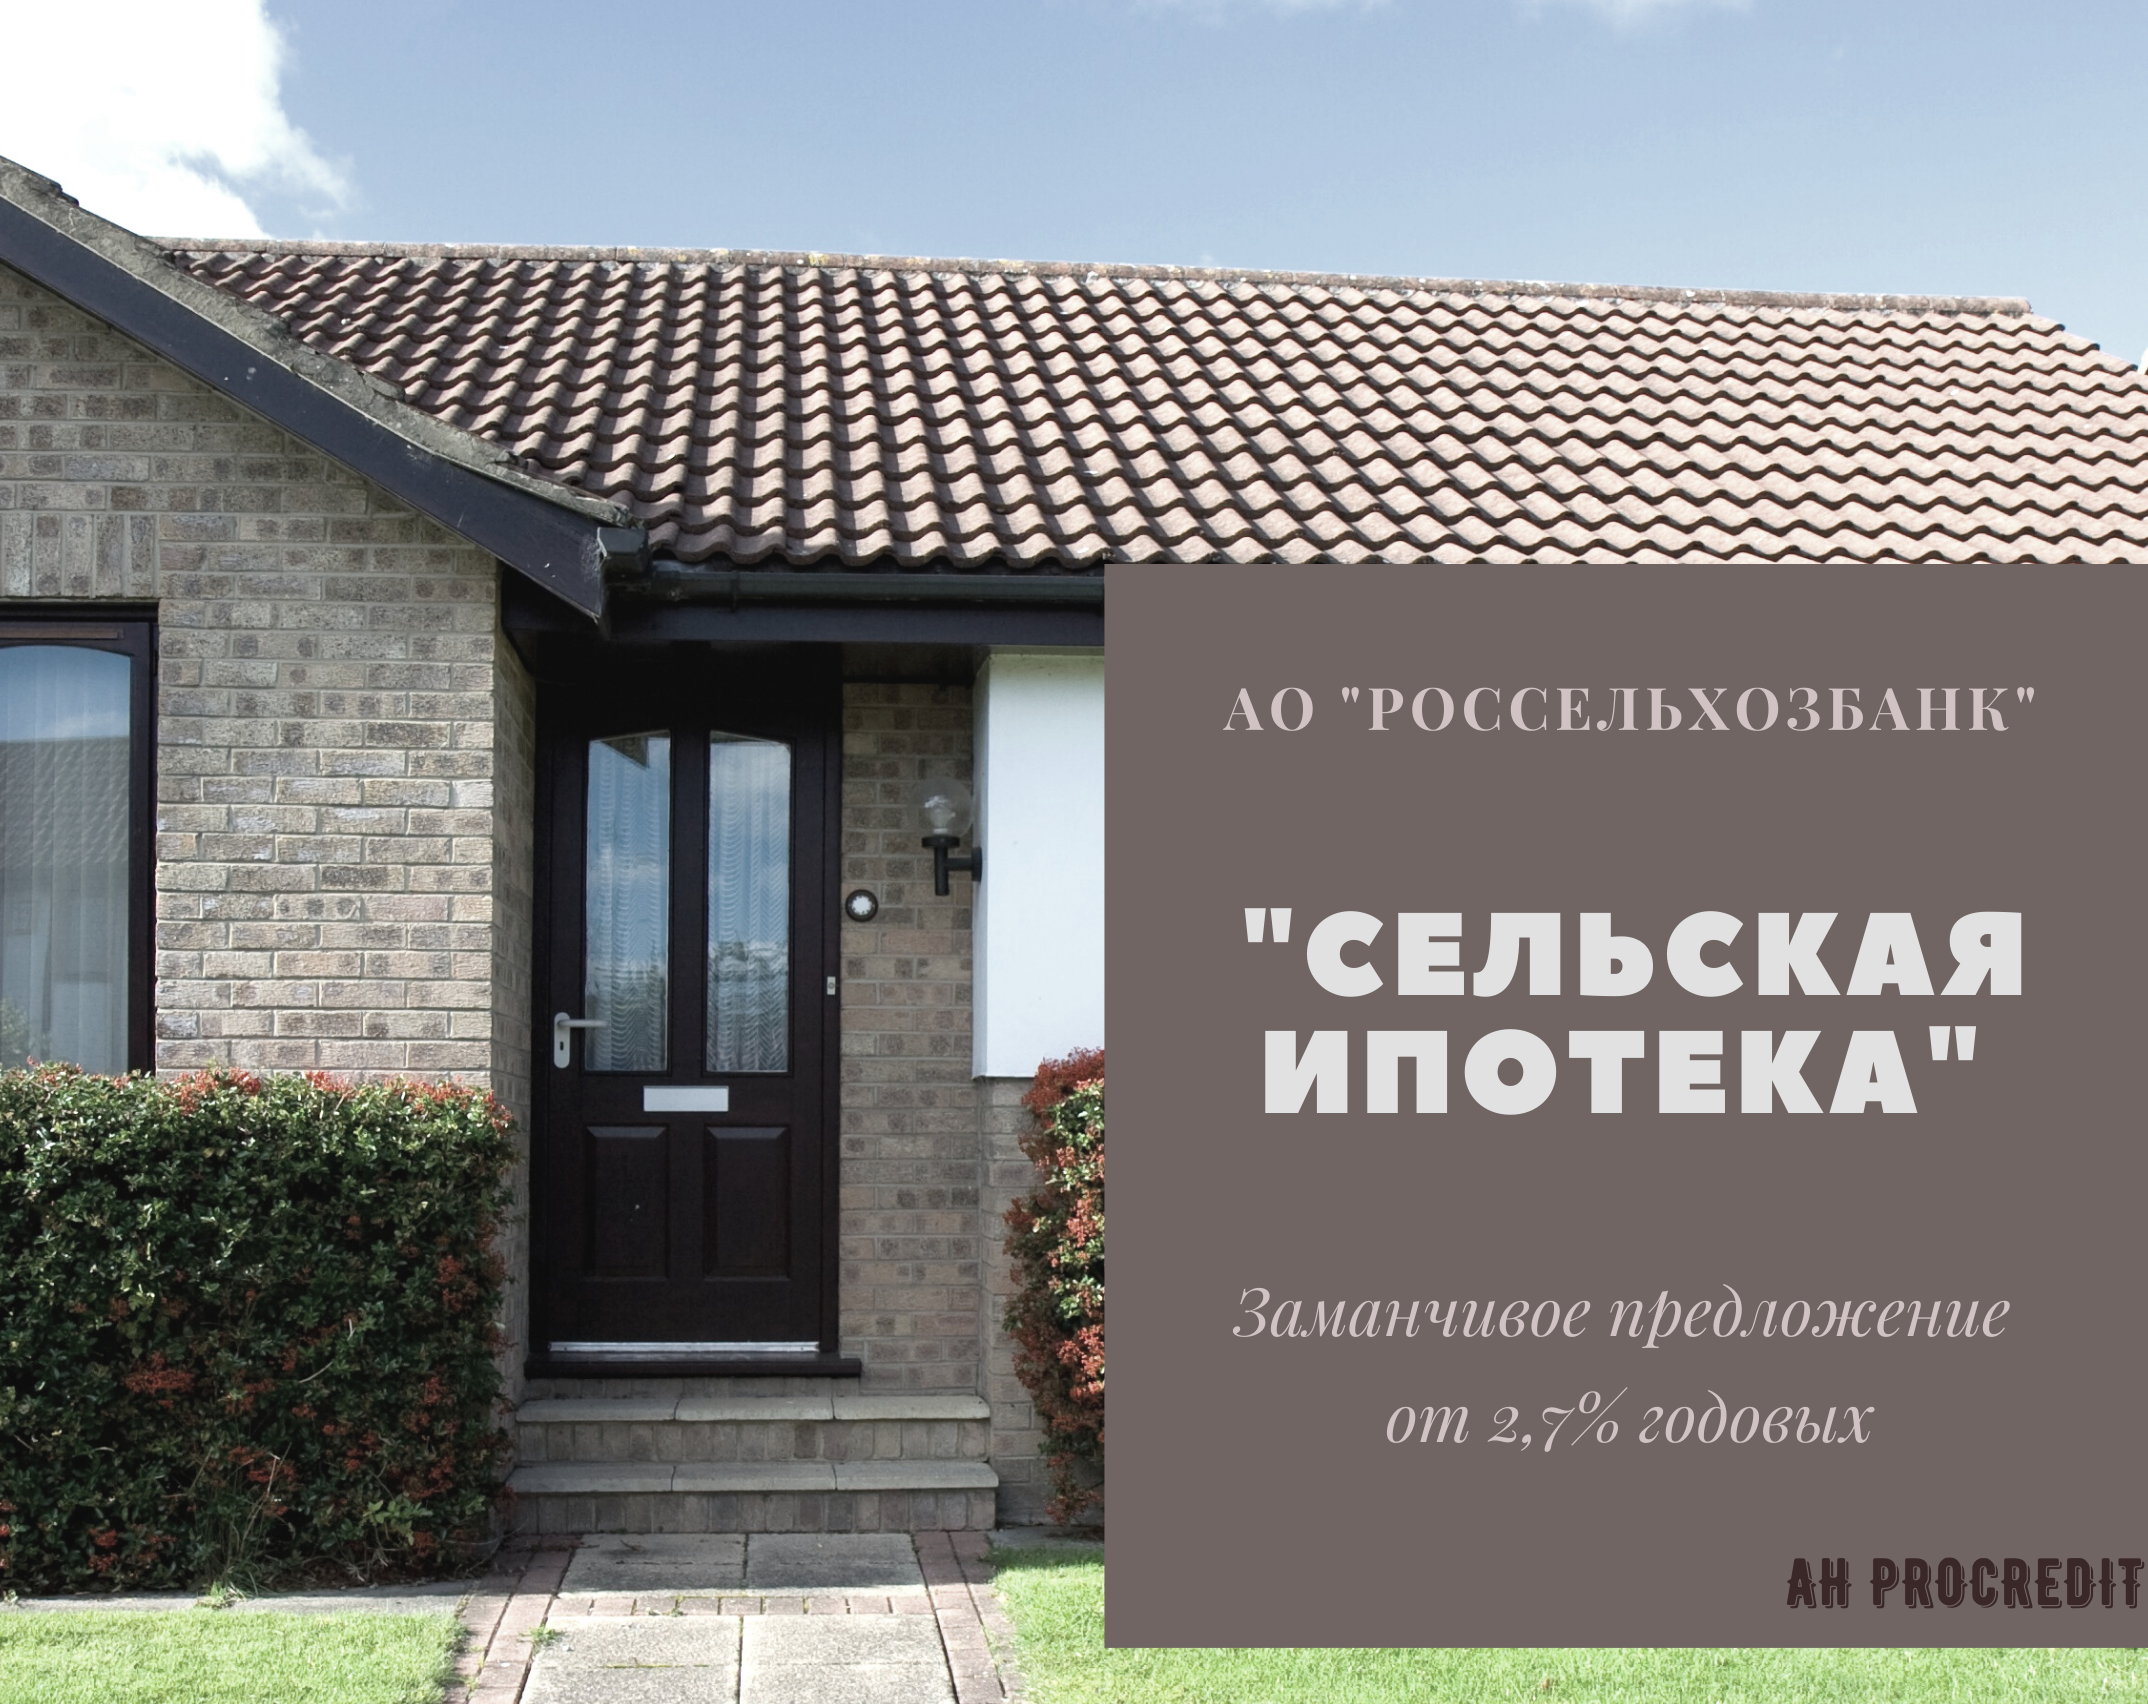 Ипотека 3% с господдержкой (сельская ипотека) с 2020 года | http://mamavprave.ru